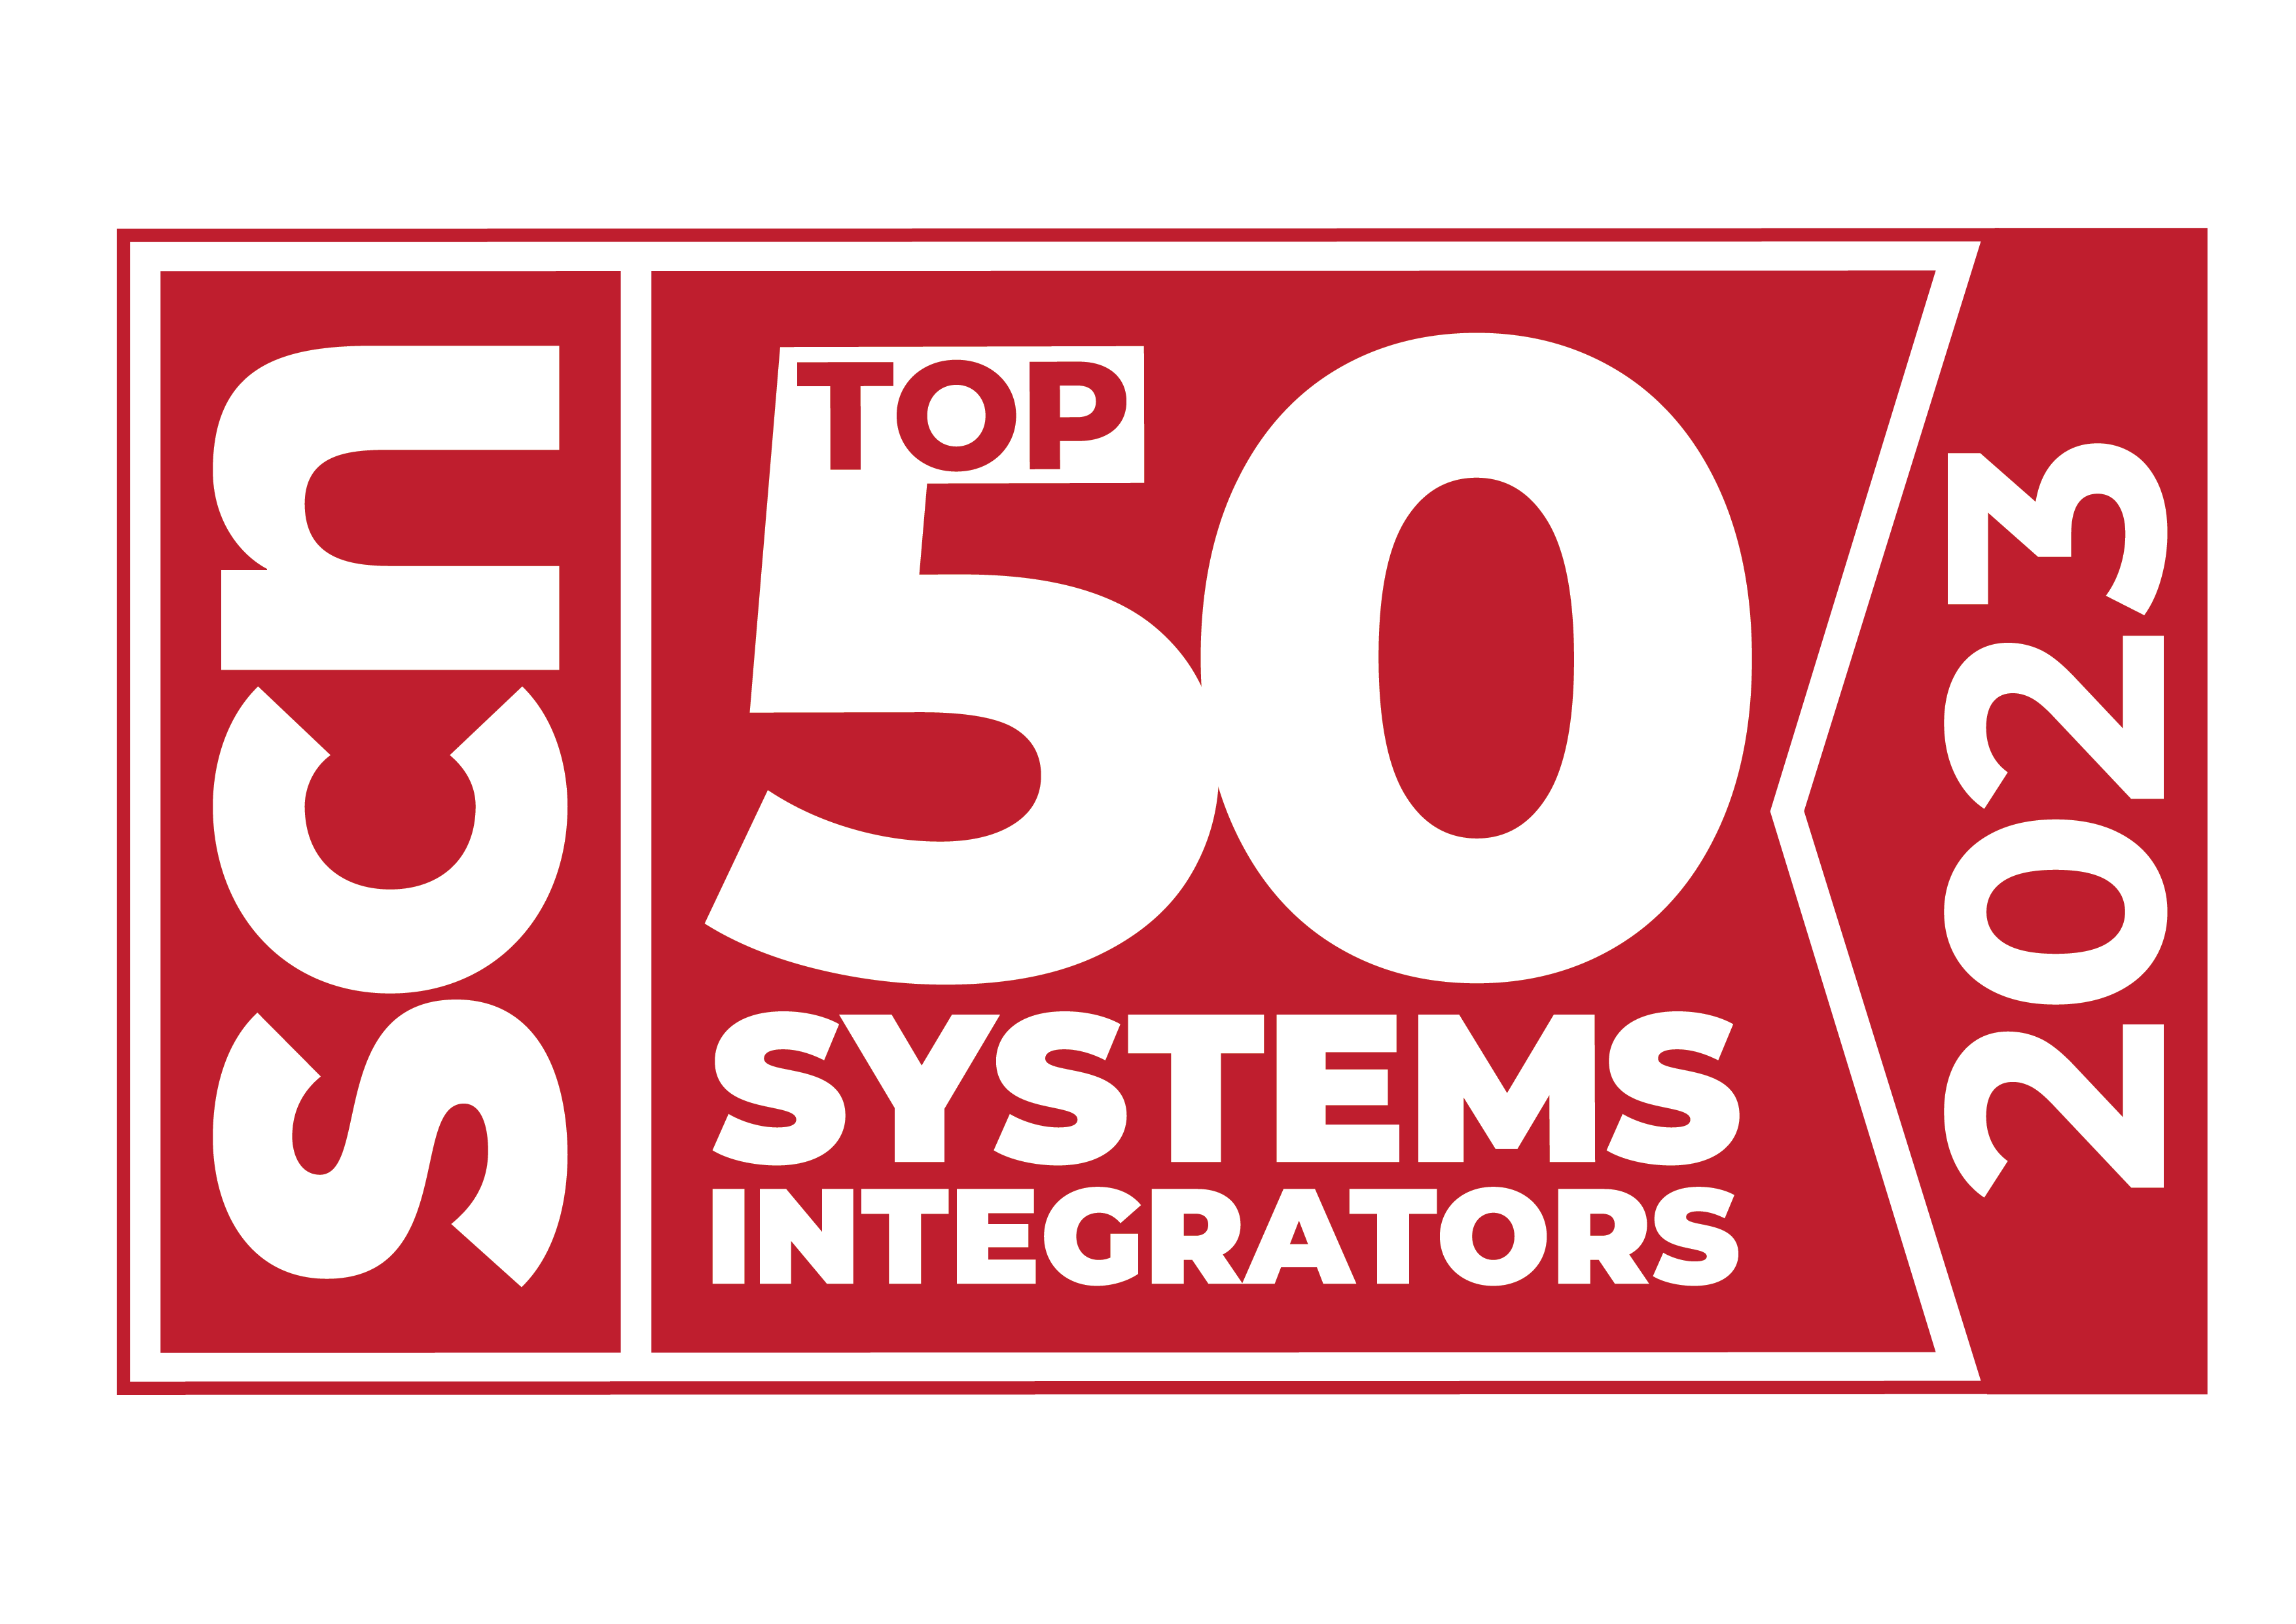 Ricoh als drittgrößter AV-Integrator im Systems Contracter News-Ranking gelistet